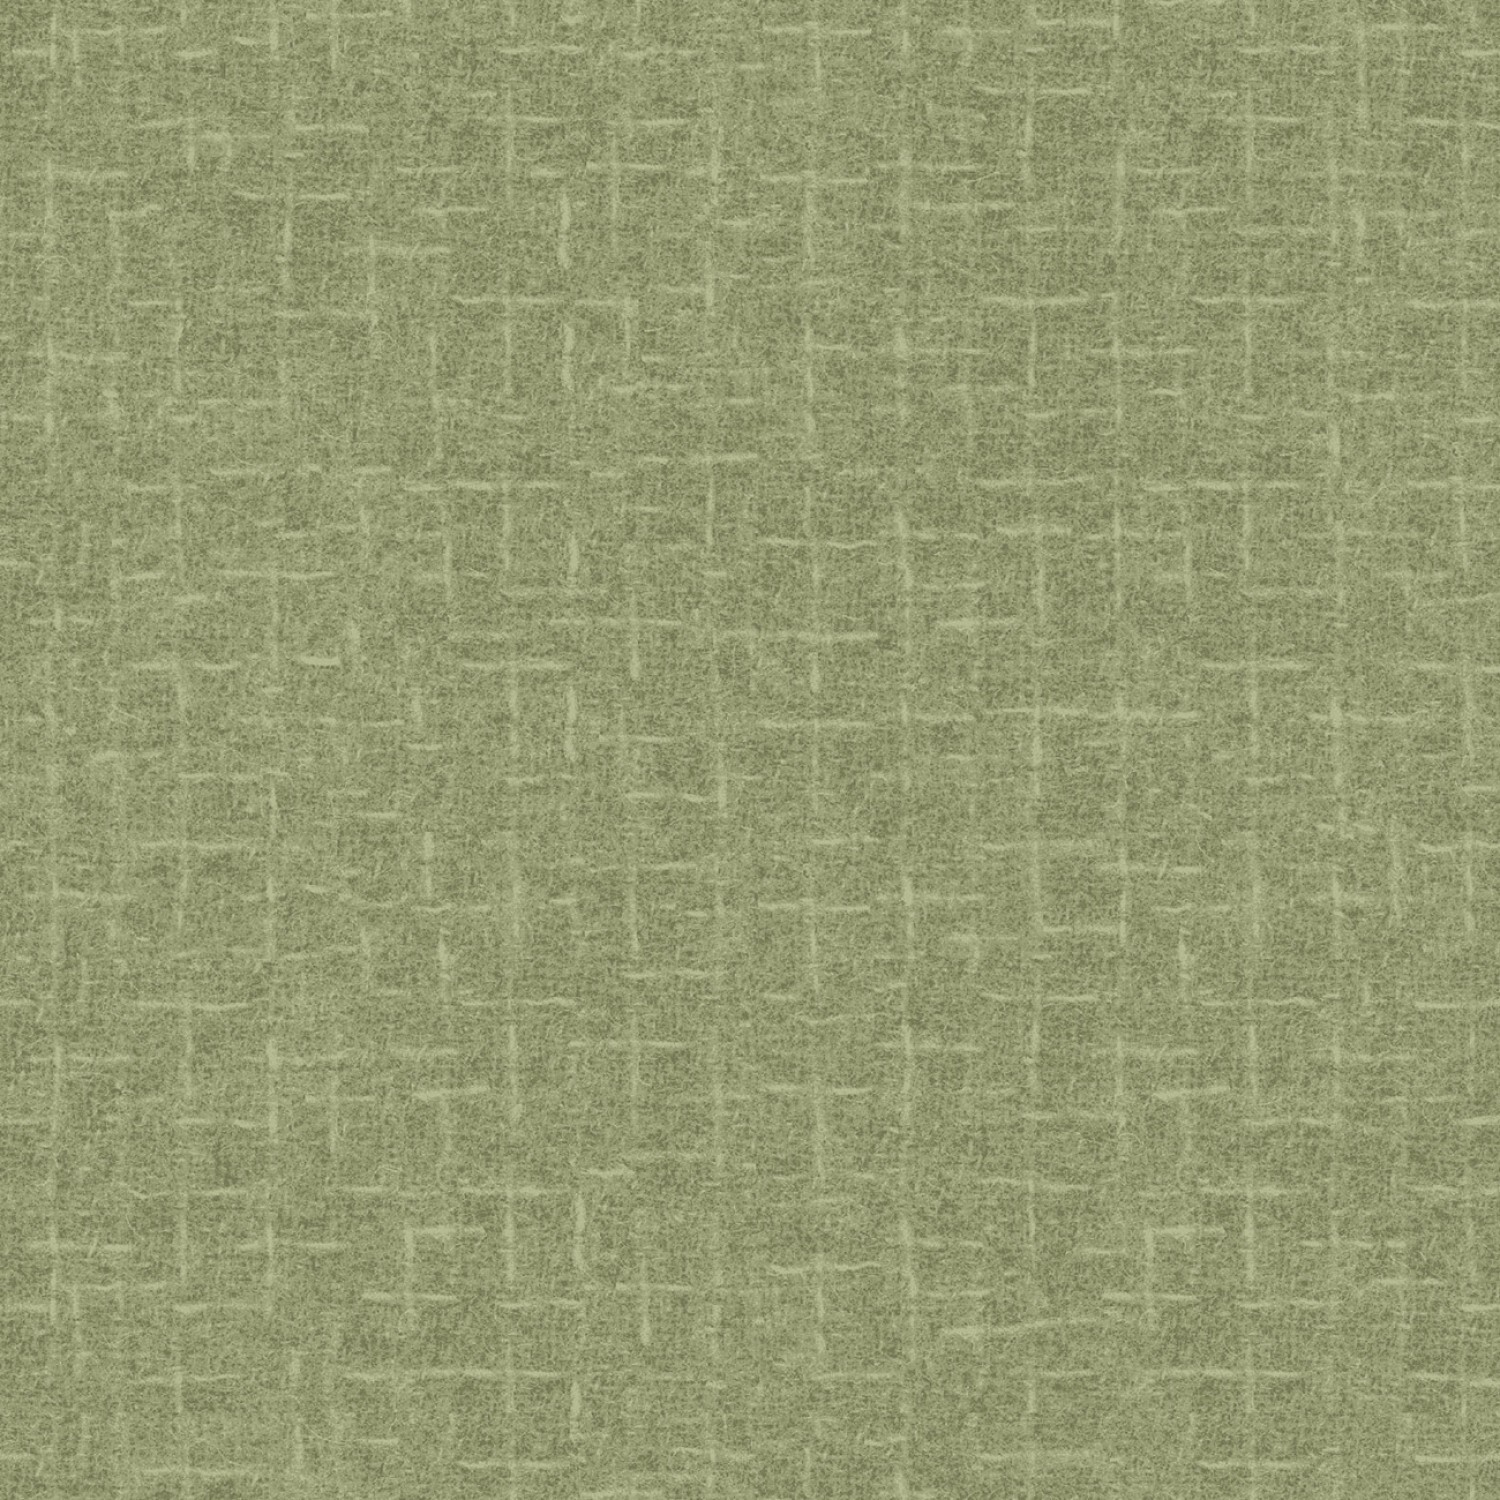 Woolies Flannel - Light Green Cross Hatch - 1/2m cut 58213